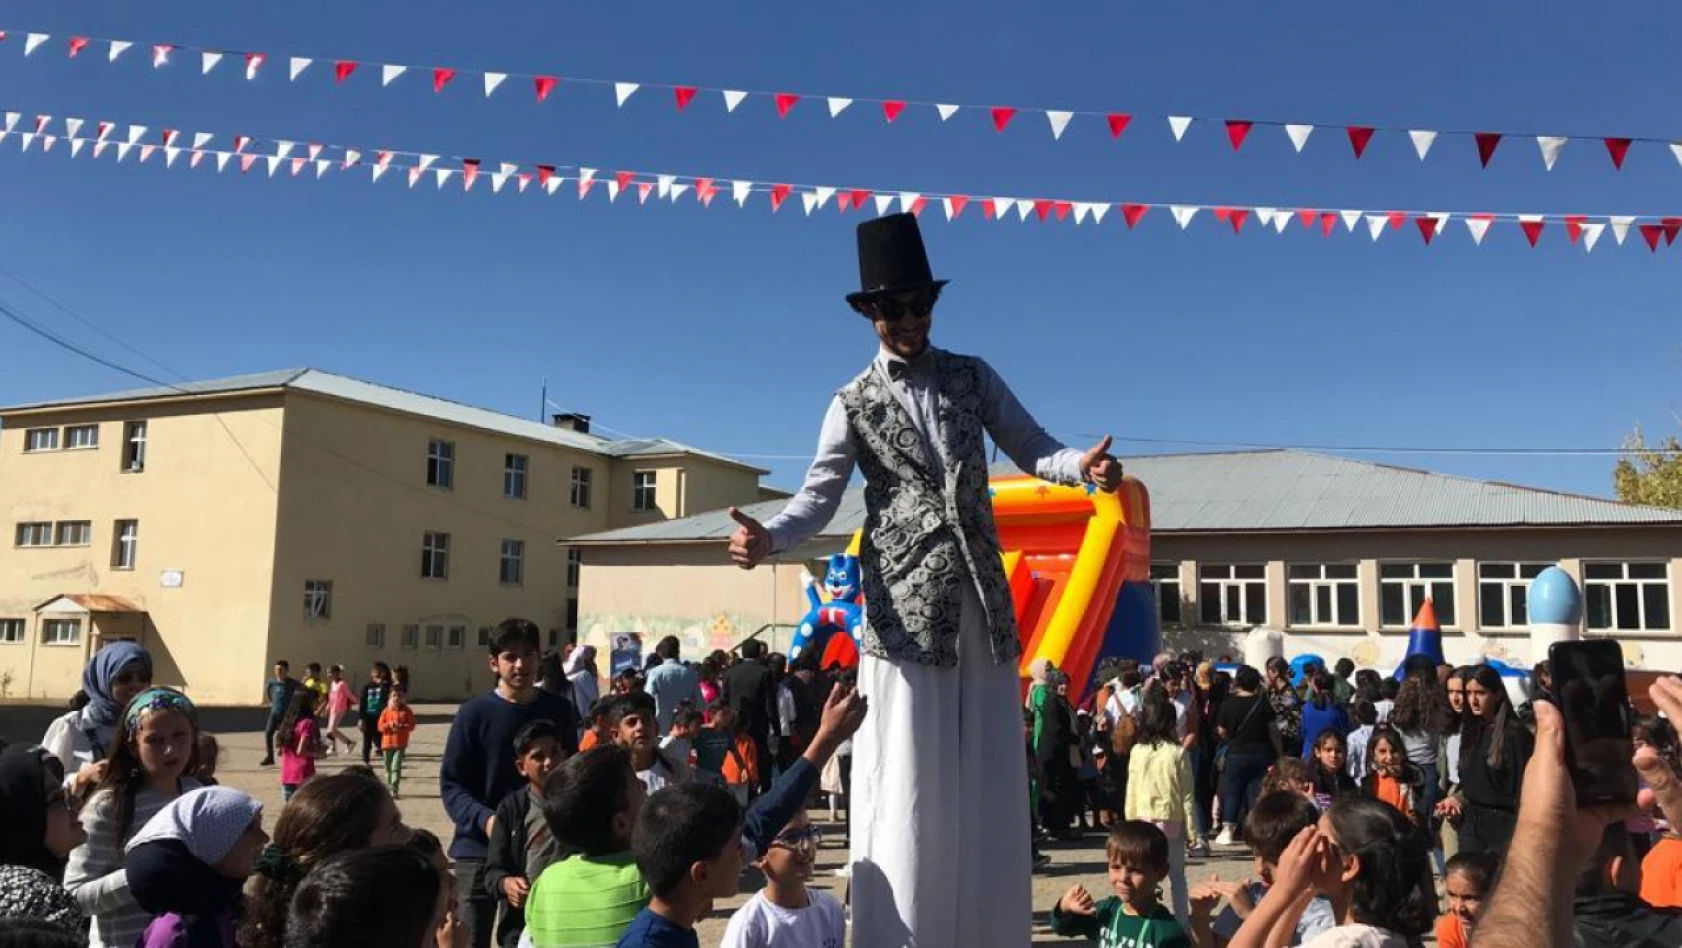 Varto'da çocukların festival coşkusu: Kaymakam Güder'den 'devamı gelecek' mesajı